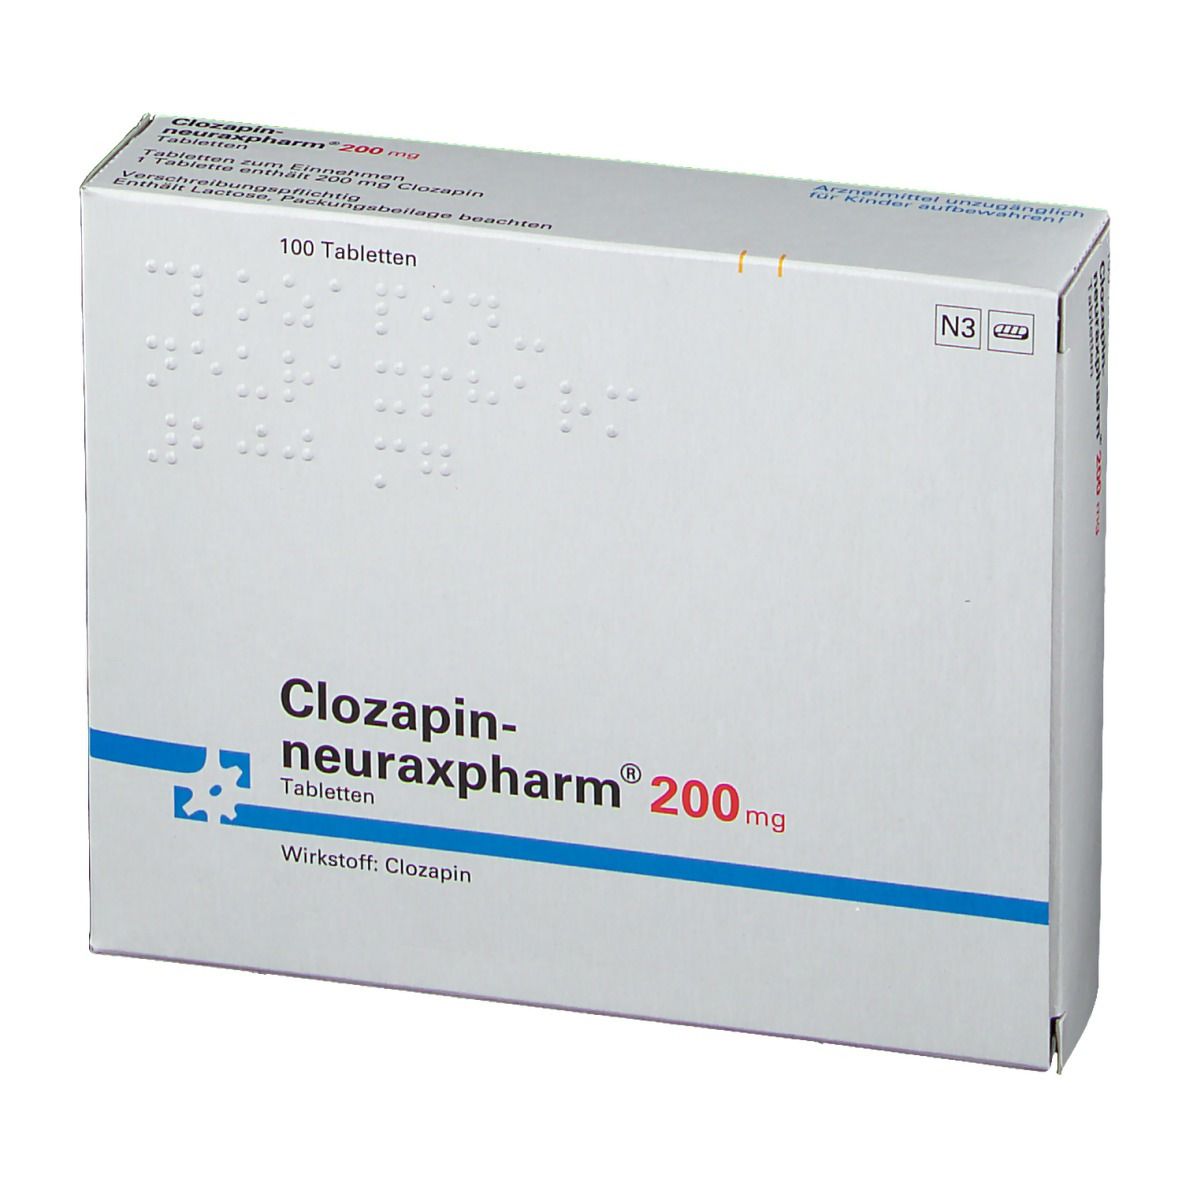 Clozapin-neuraxpharm® 200 mg